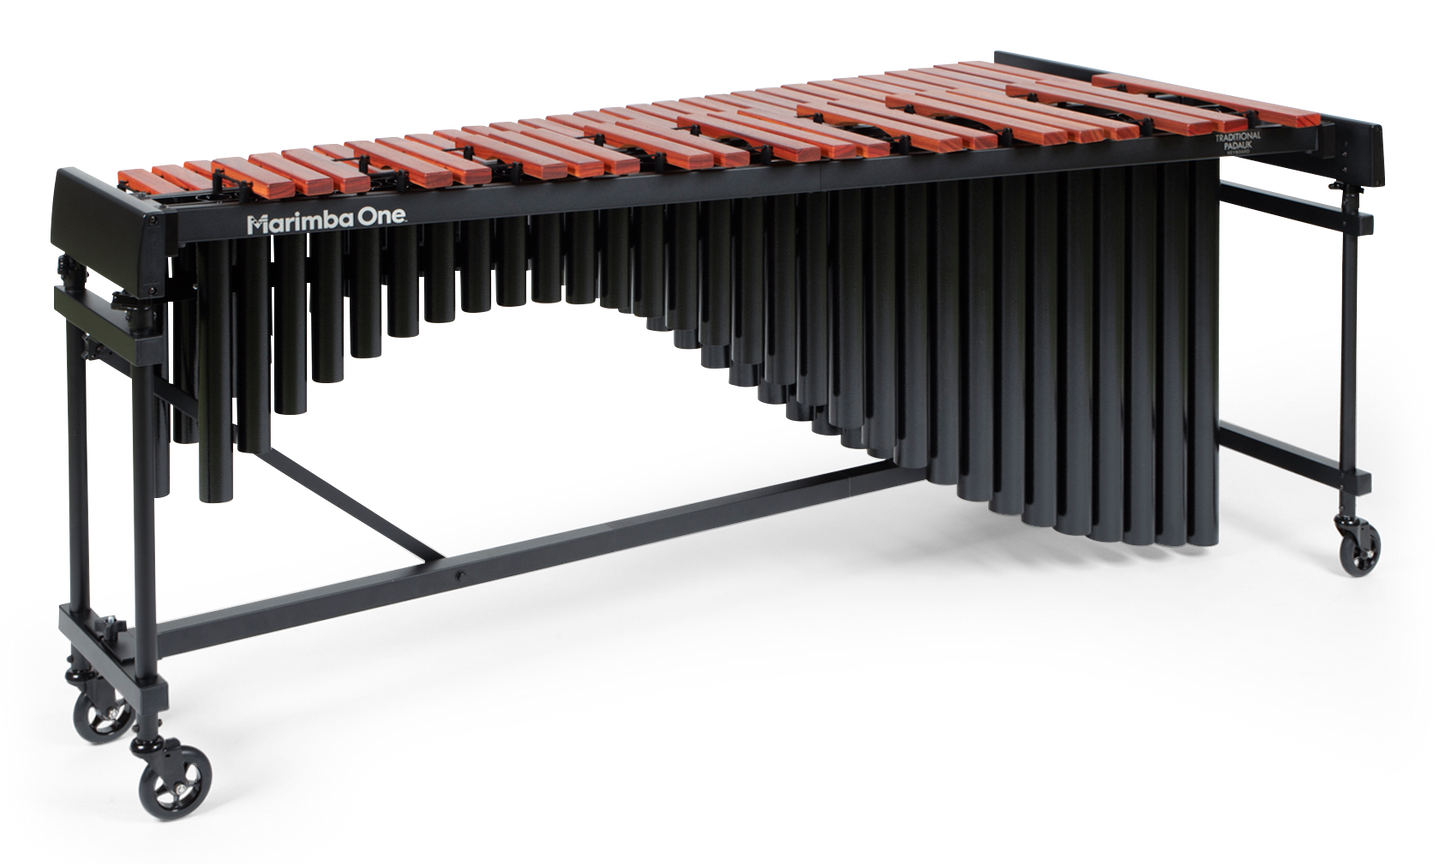 Marimba de 4.3 octavas Marimba One Educational con resonadores Classic y teclado de Padauk